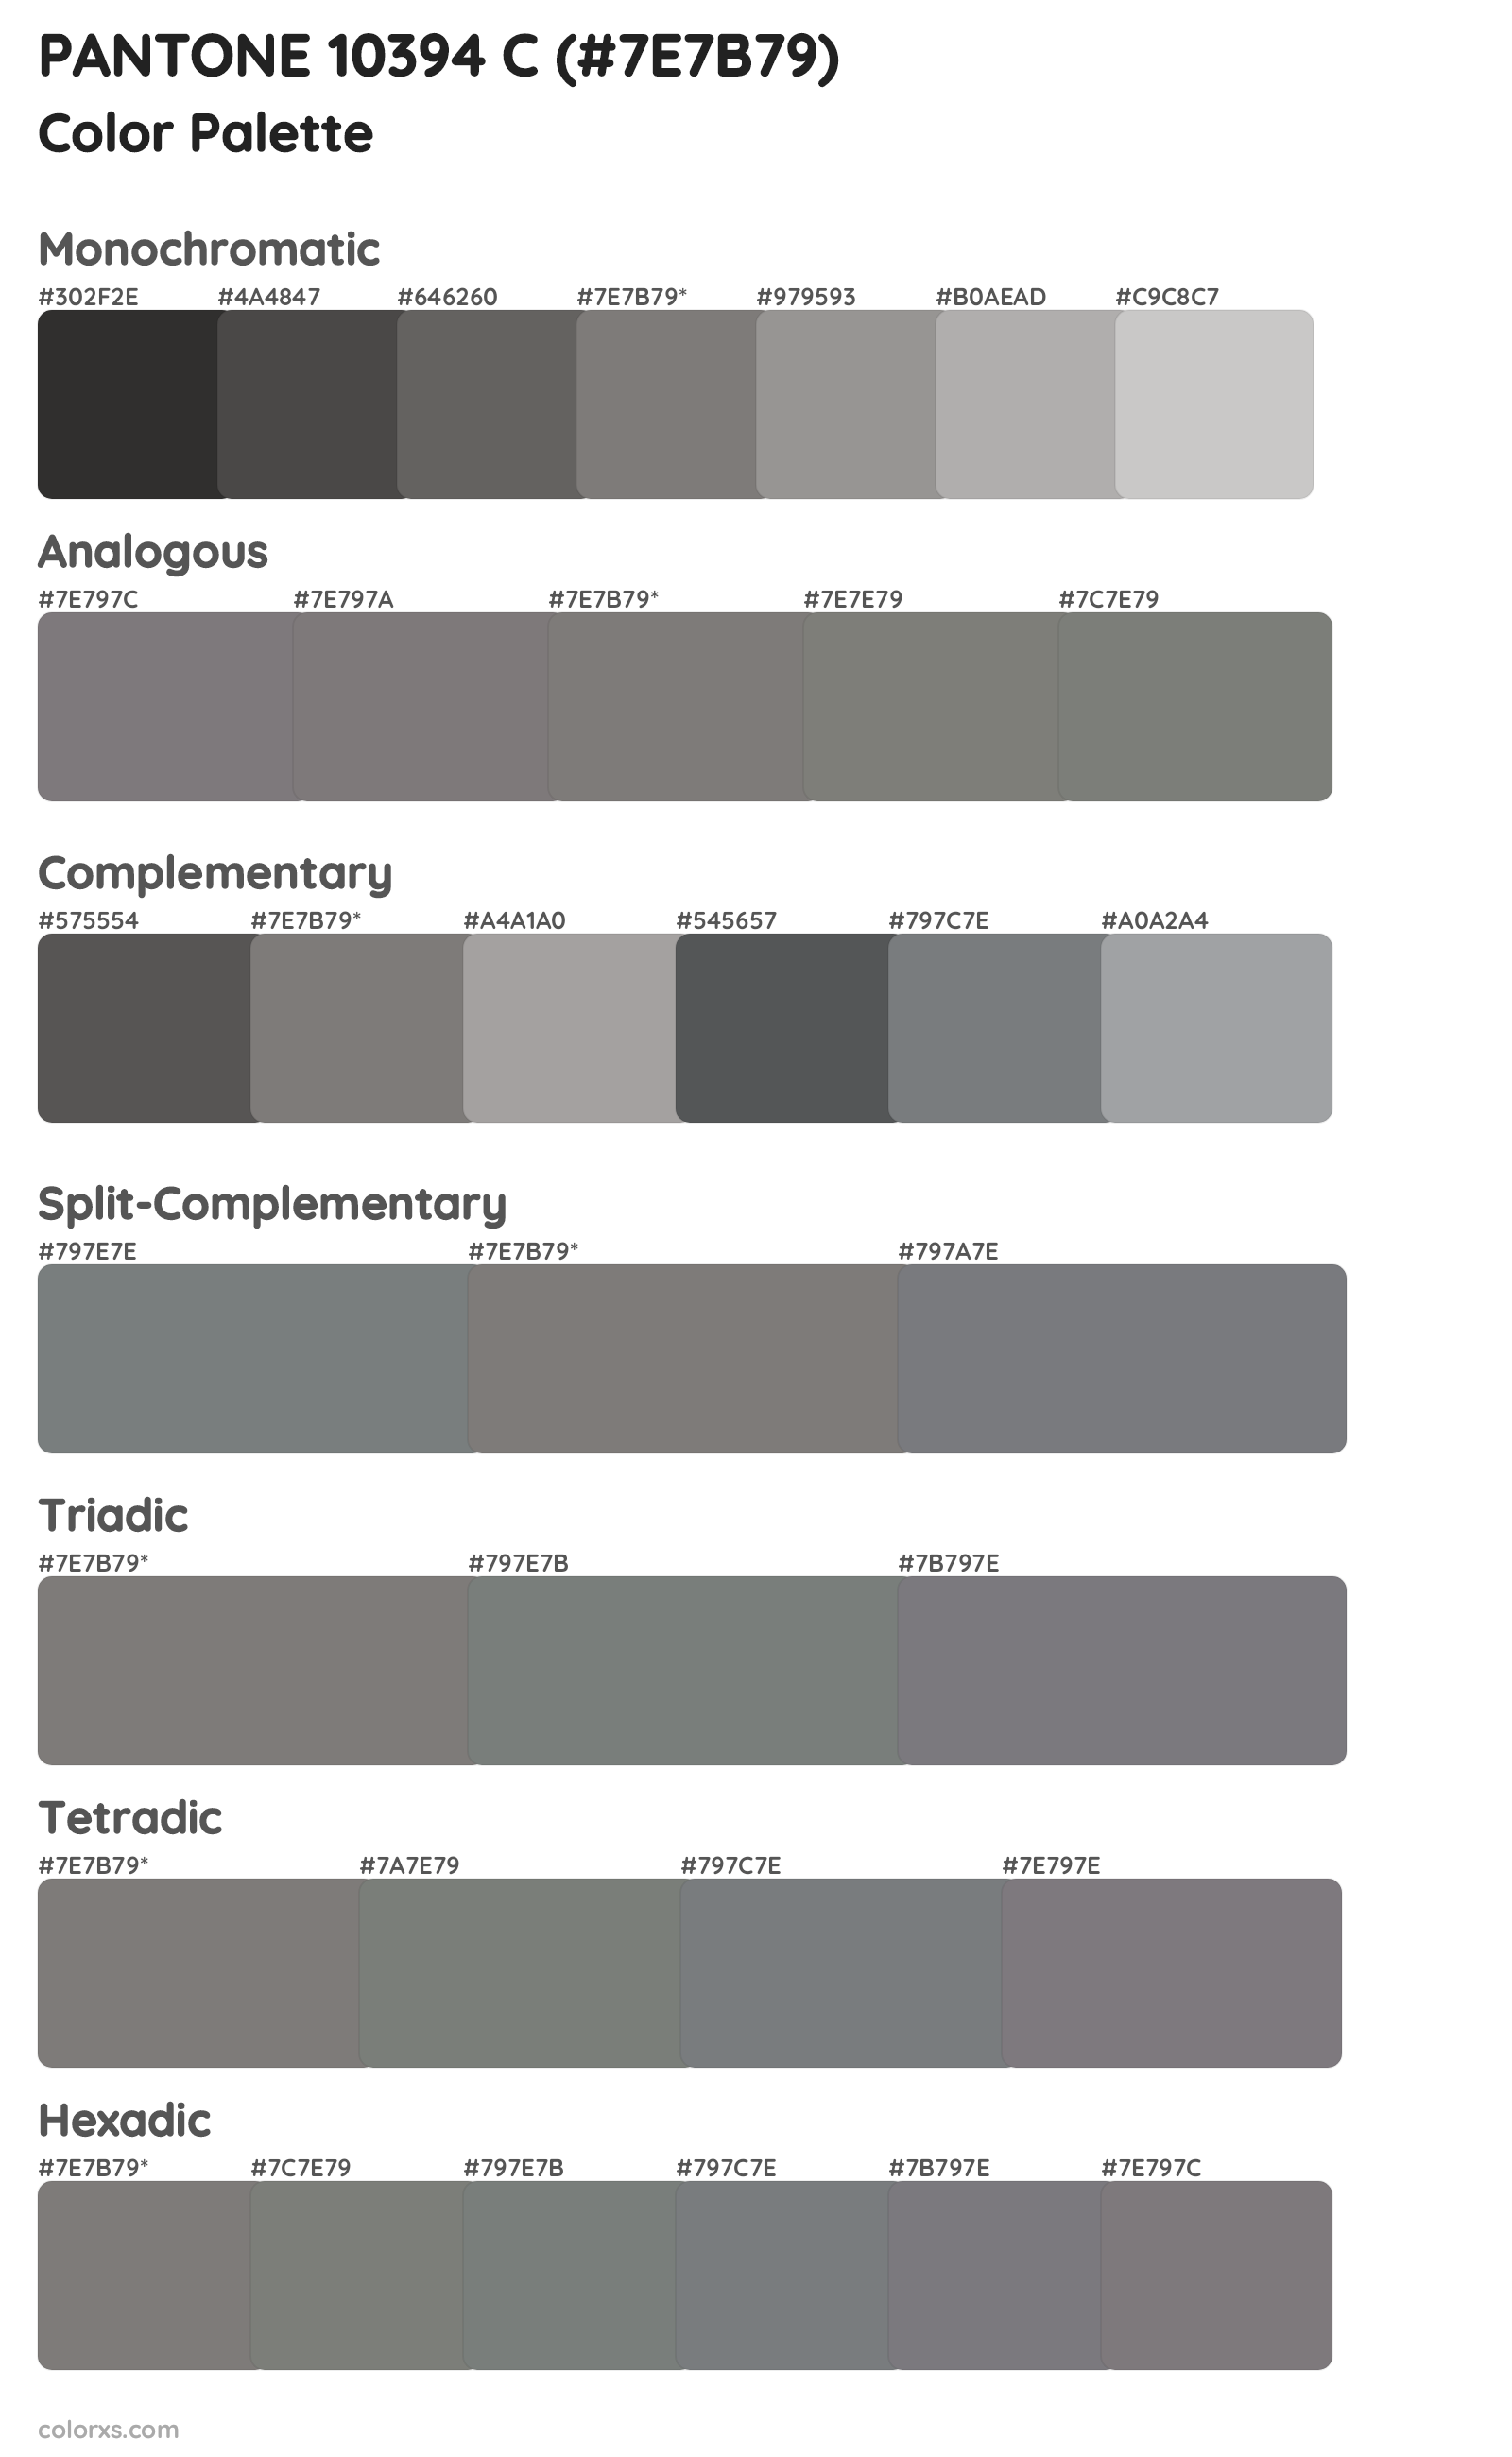 PANTONE 10394 C Color Scheme Palettes